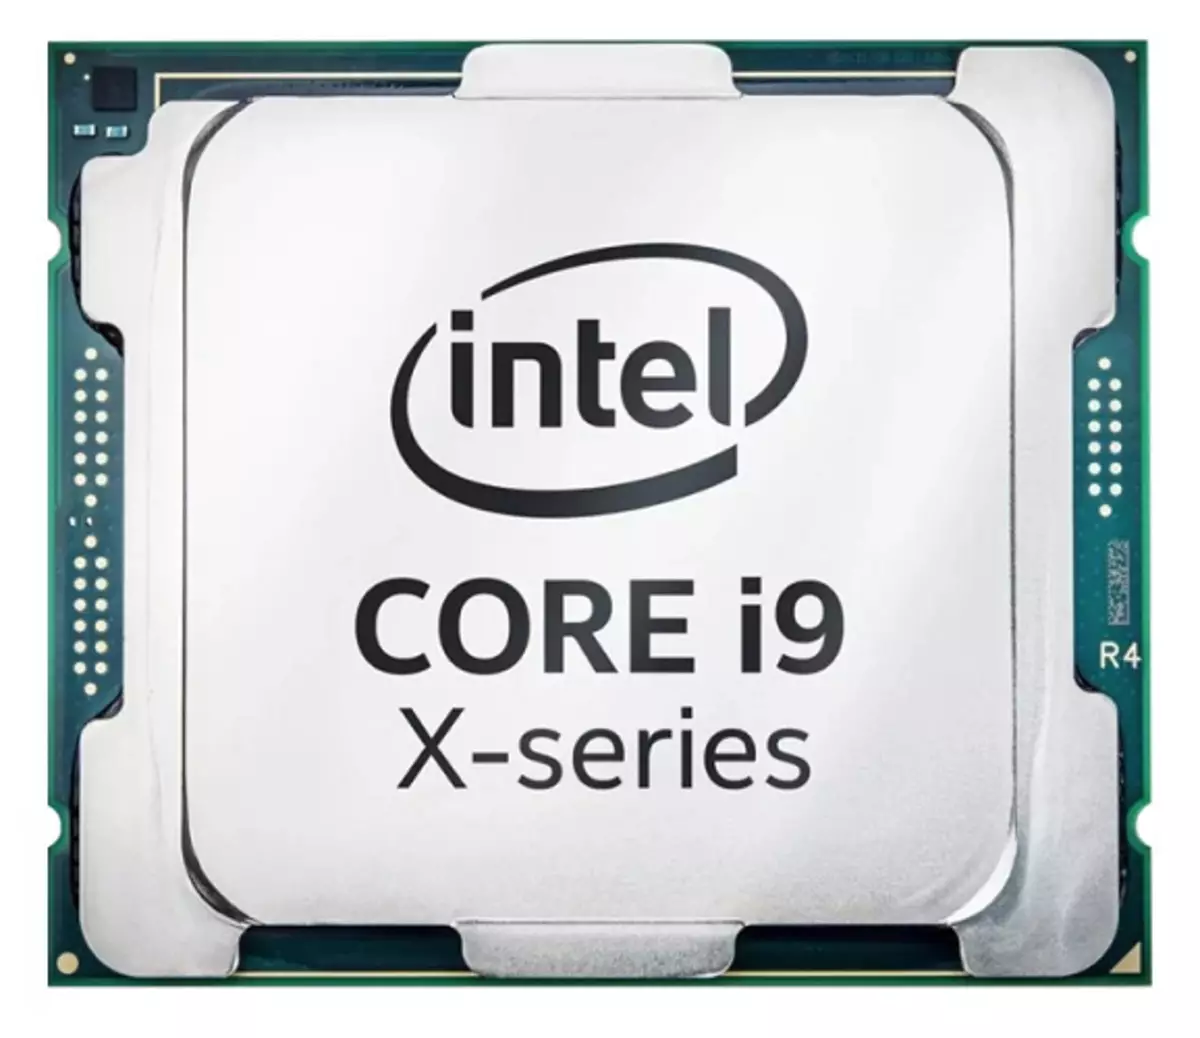 Algemiene werjefte fan 'e Intel Core I9-7960x Skylake